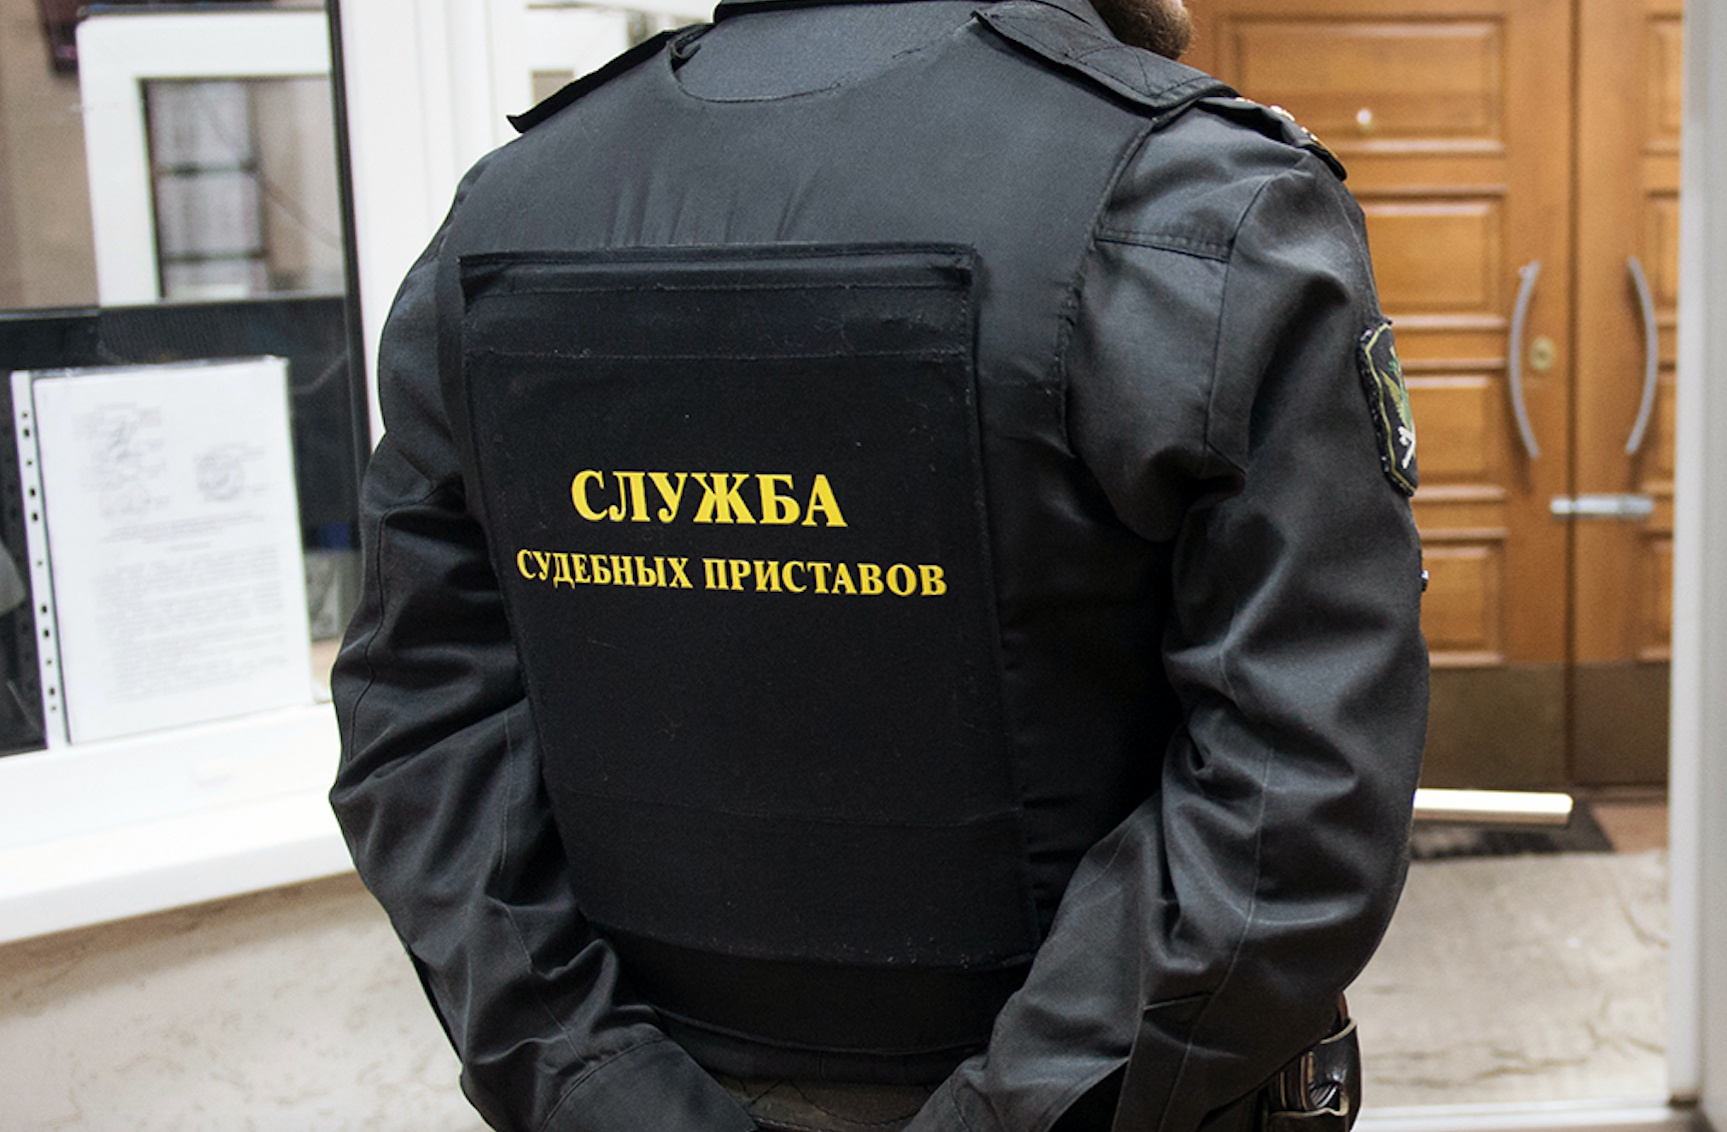 В суд направлено уголовное дело о хищении 1,1 млн рублей судебными приставами